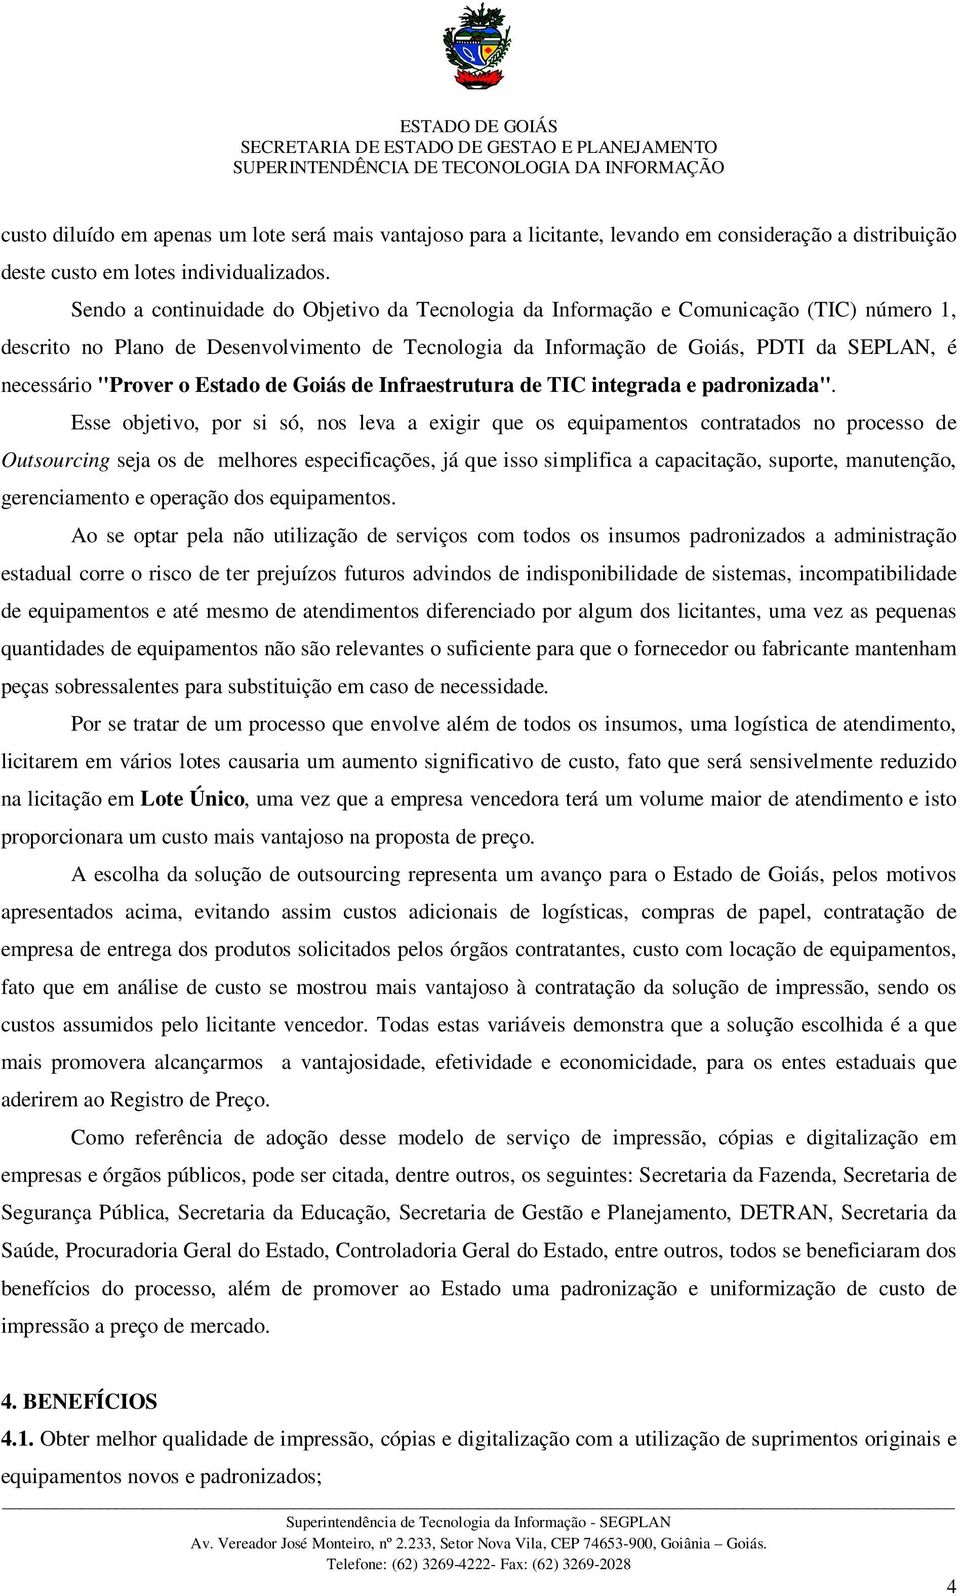 Sendo a continuidade do Objetivo da Tecnologia da Informação e Comunicação (TIC) número 1, descrito no Plano de Desenvolvimento de Tecnologia da Informação de Goiás, PDTI da SEPLAN, é necessário